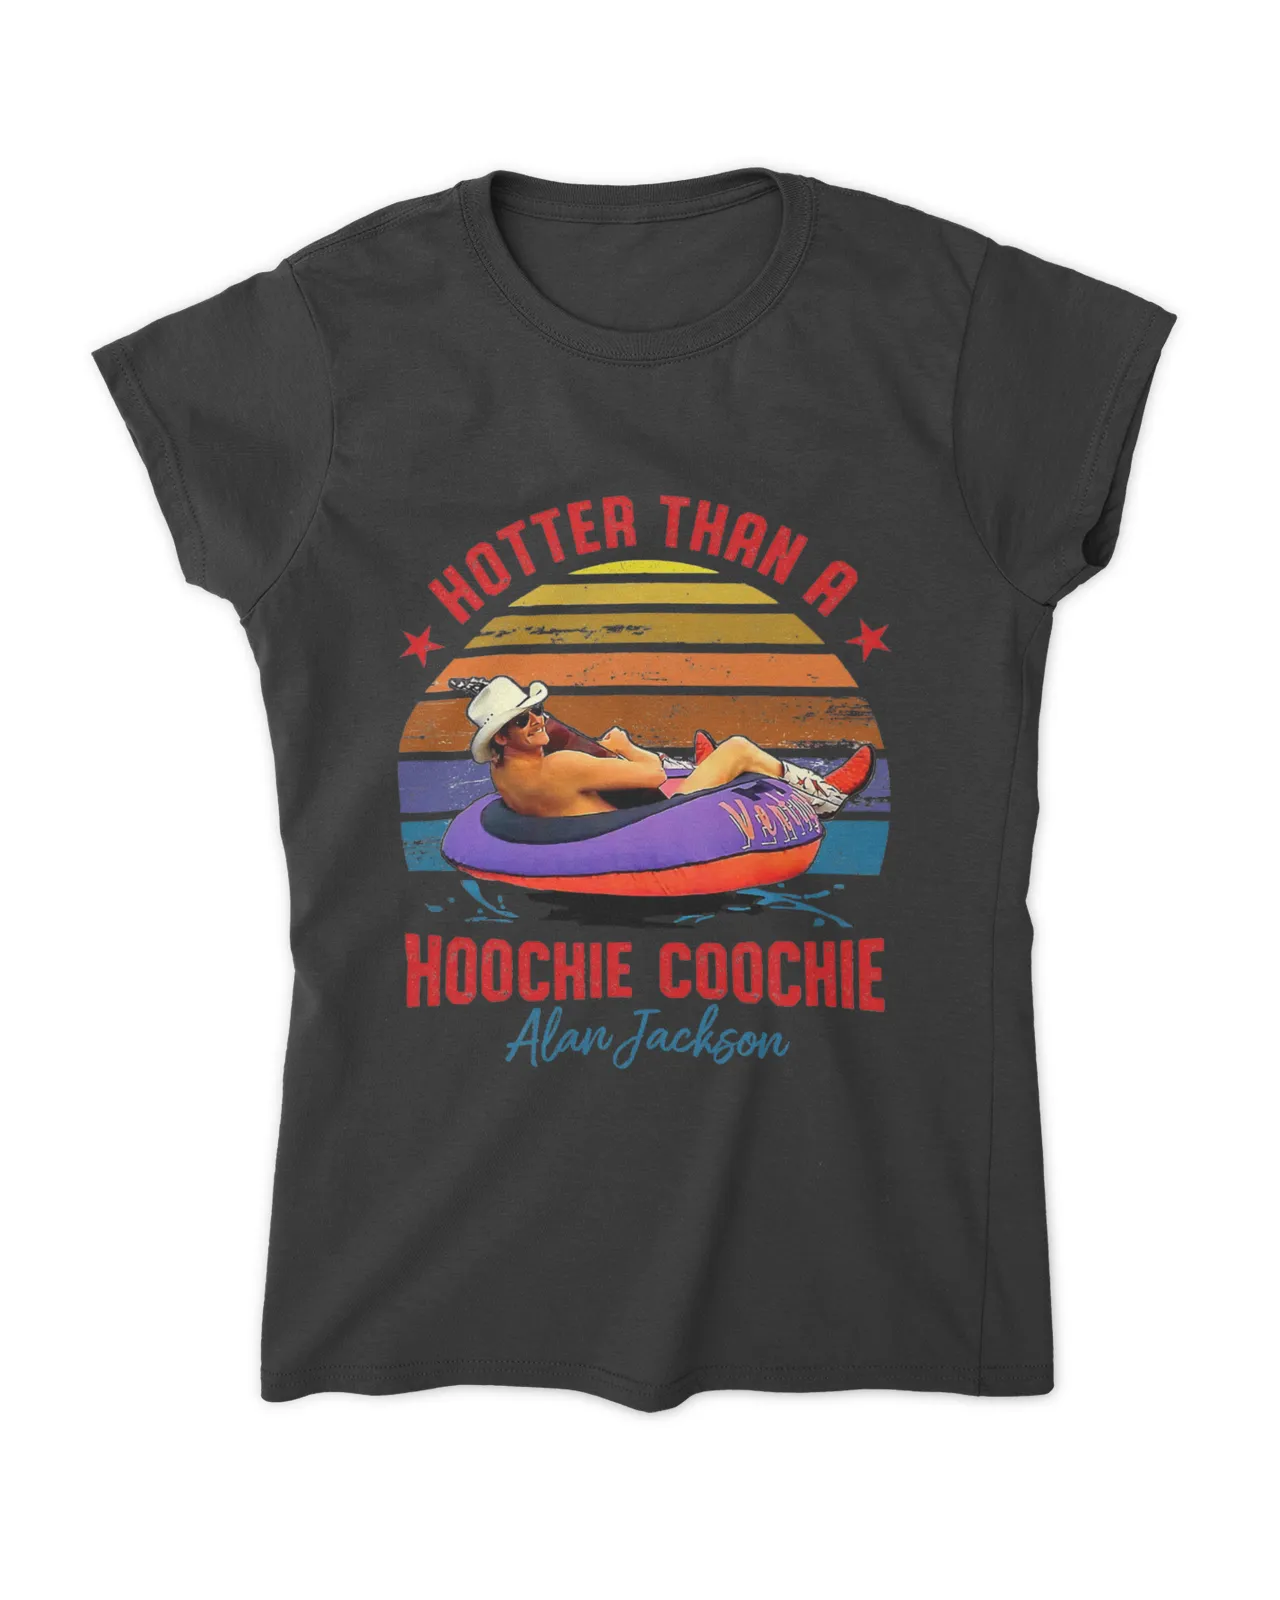 https://senprints.com/hotter-than-a-hoochie-coochie-shirt-1?spsid=101692